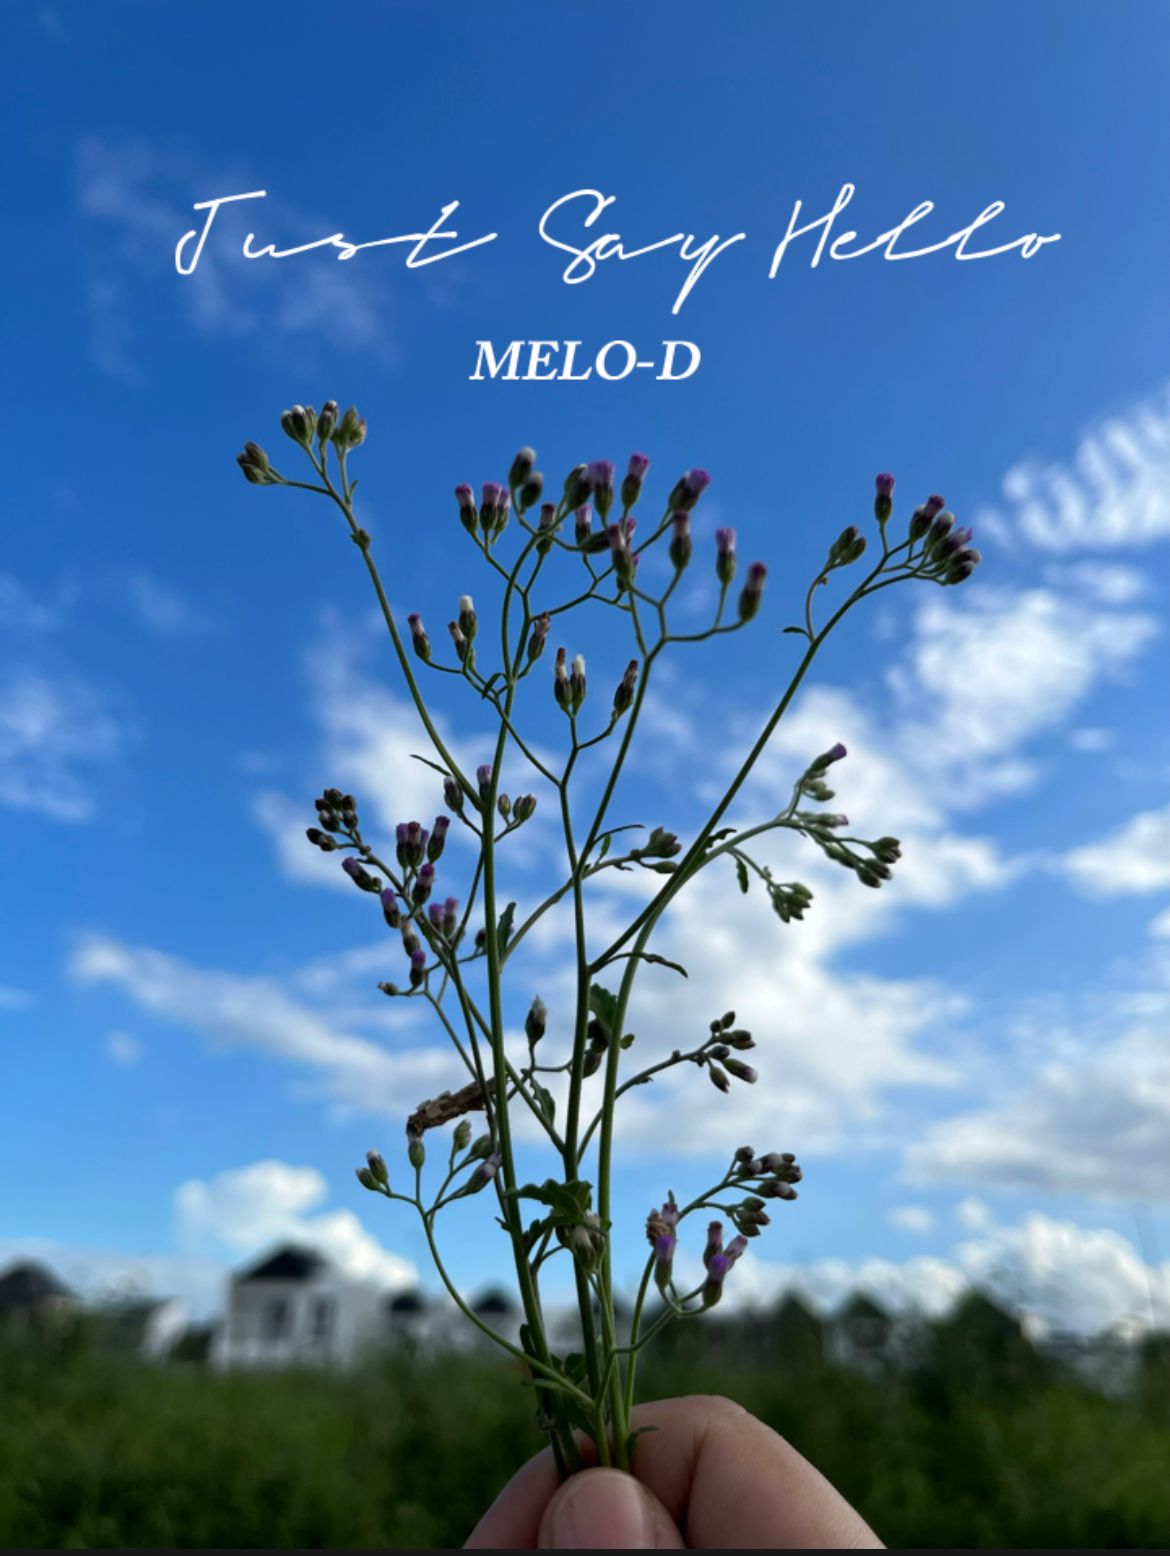 Just Say Hello milik Melo-D Viral di TikTok, Berikut Lirik dan Terjemahannya!